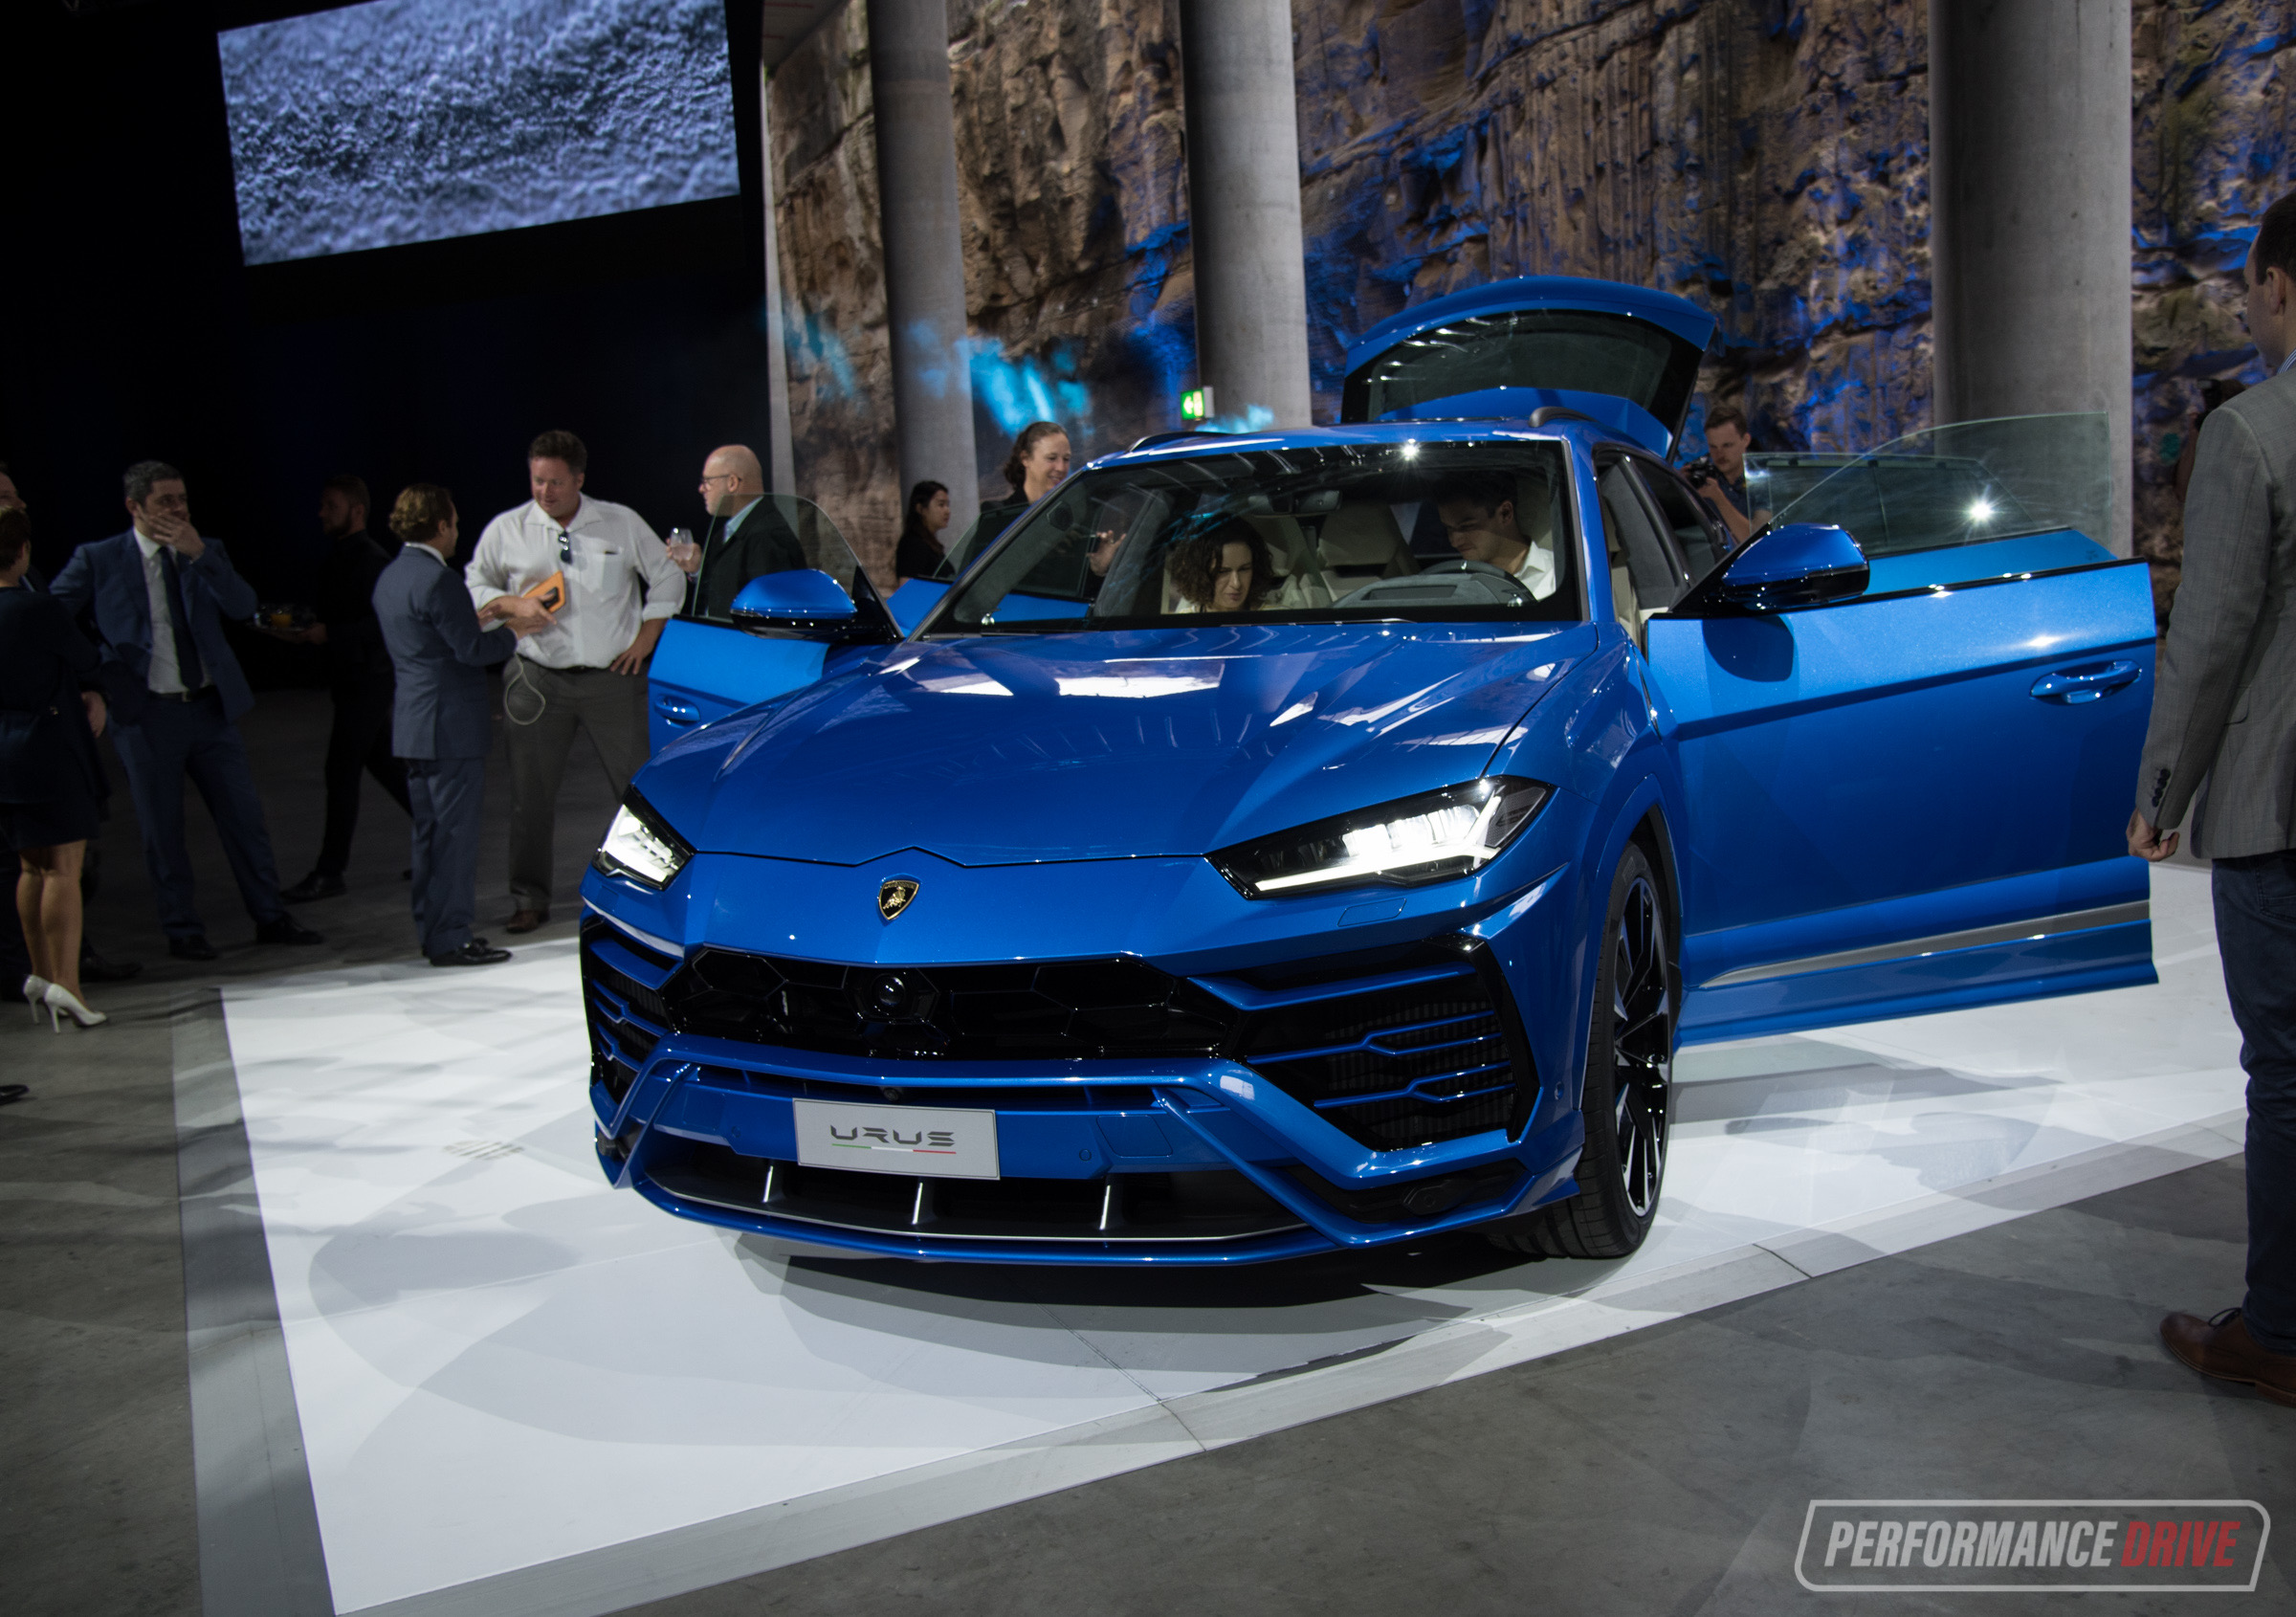 2018 Lamborghini Urus SUV Gets Official Unveiling in ...